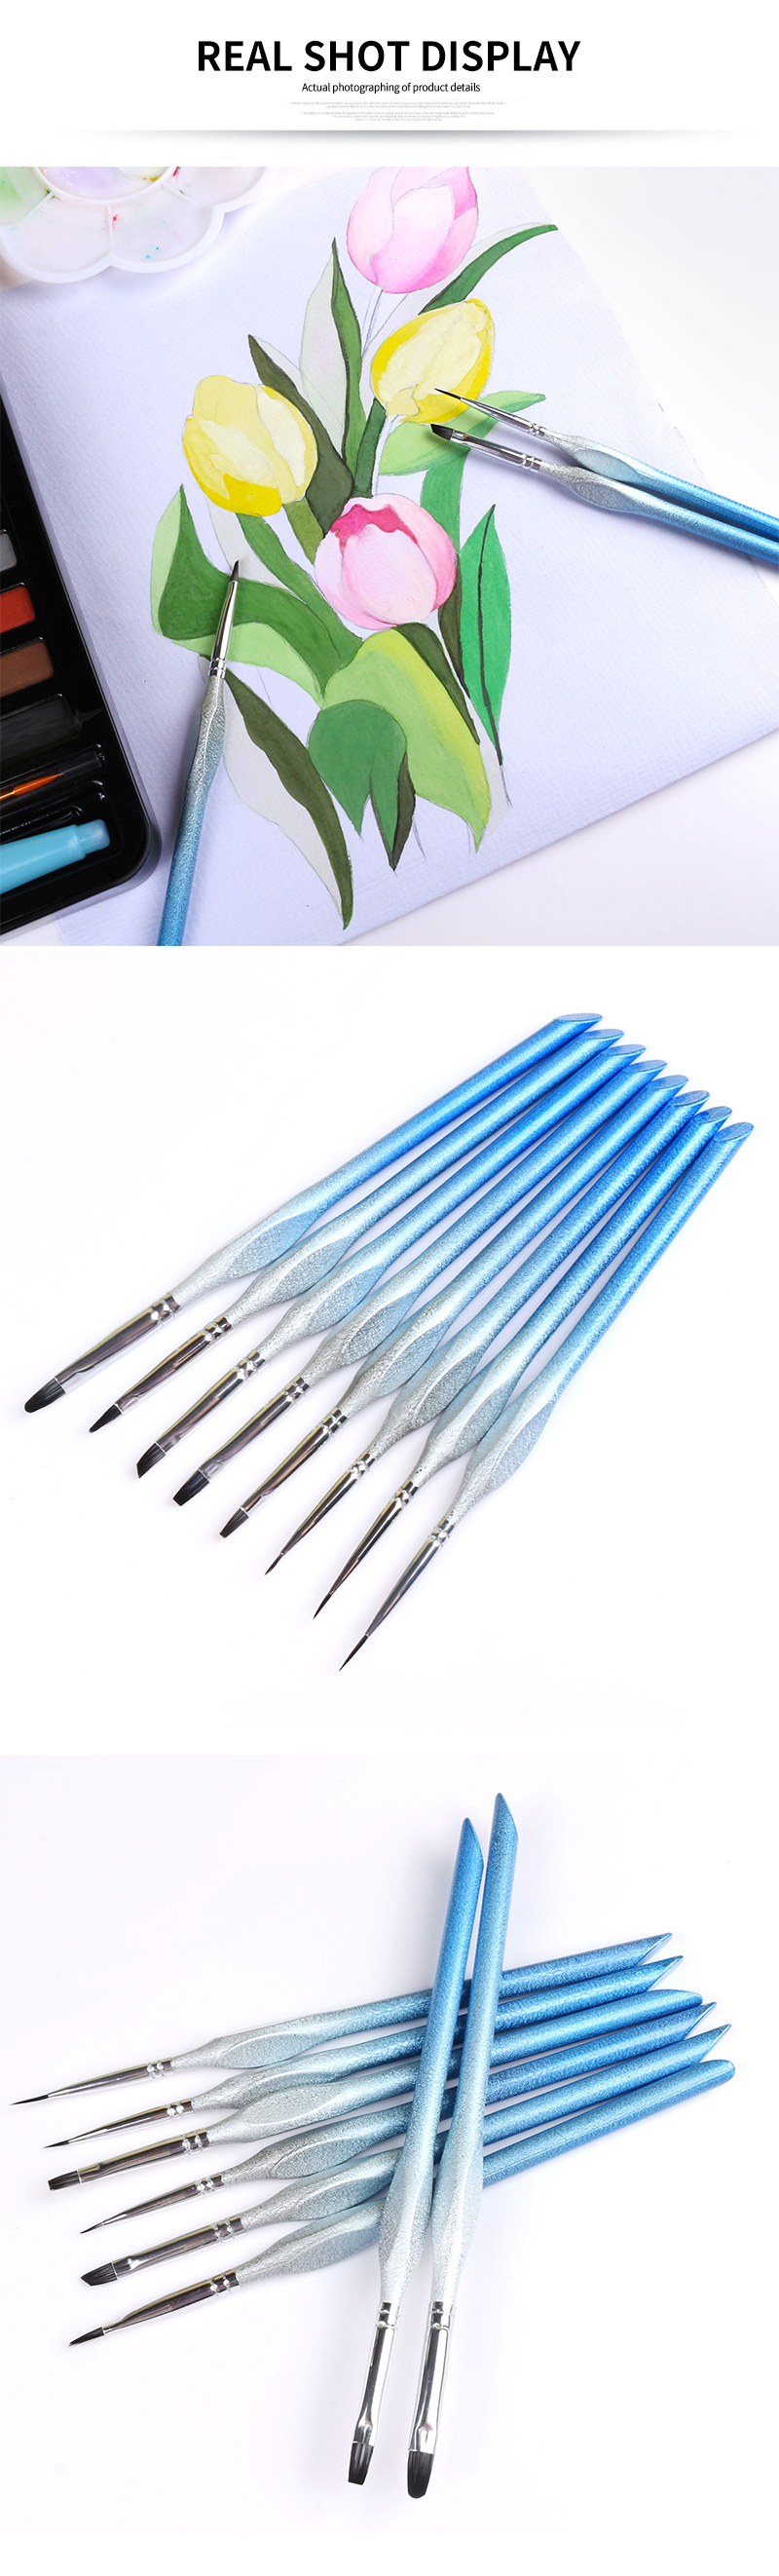 acrylic paint brushes